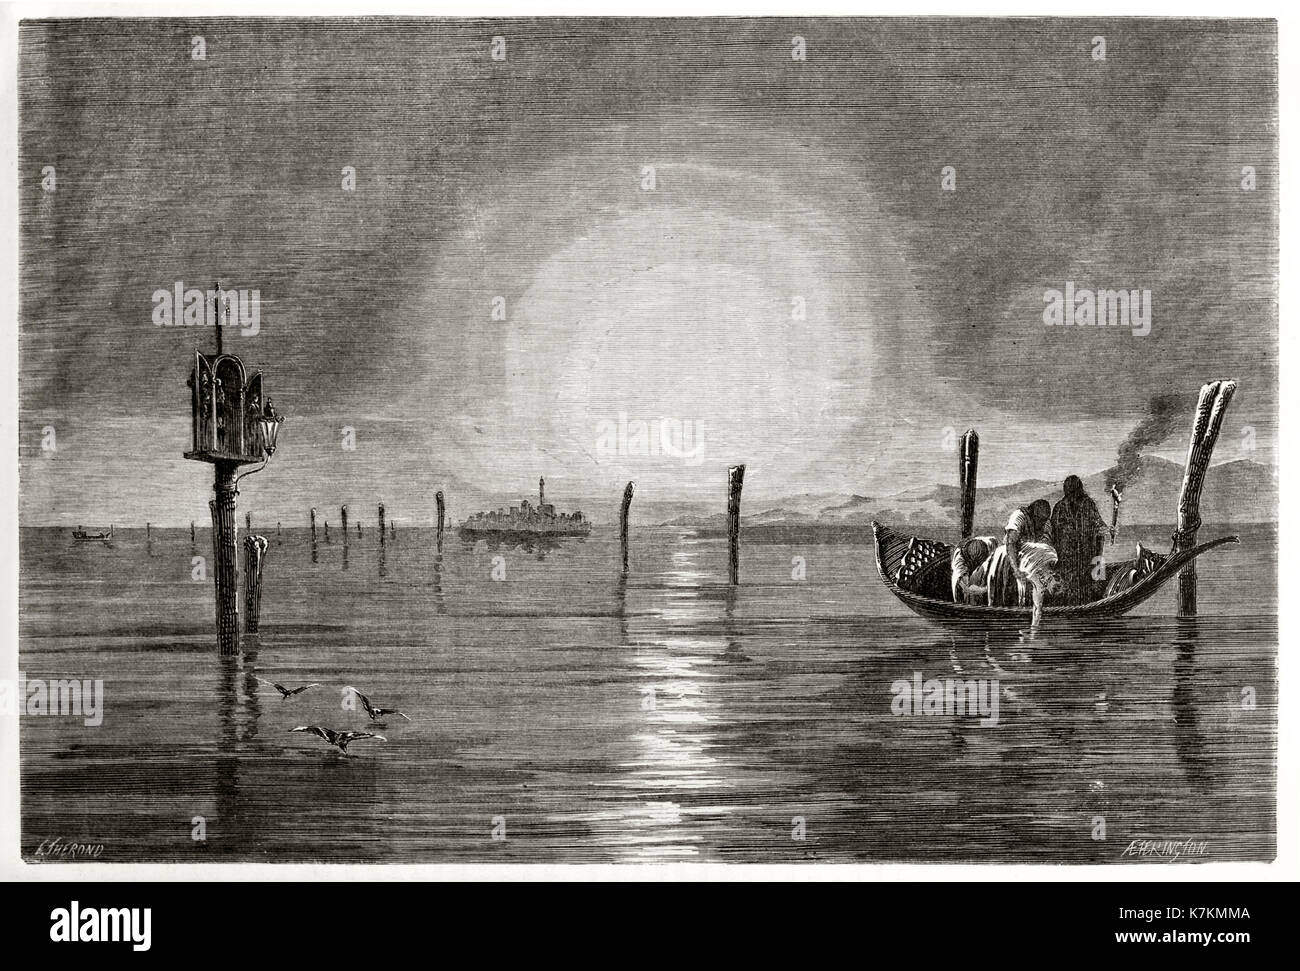 Ancienne Vue de nuit Canal Orfano (canal Orfano) à Venise, Italie. Par Therond après de Beaumont, publ. sur le Tour du Monde, Paris, 1862 Banque D'Images